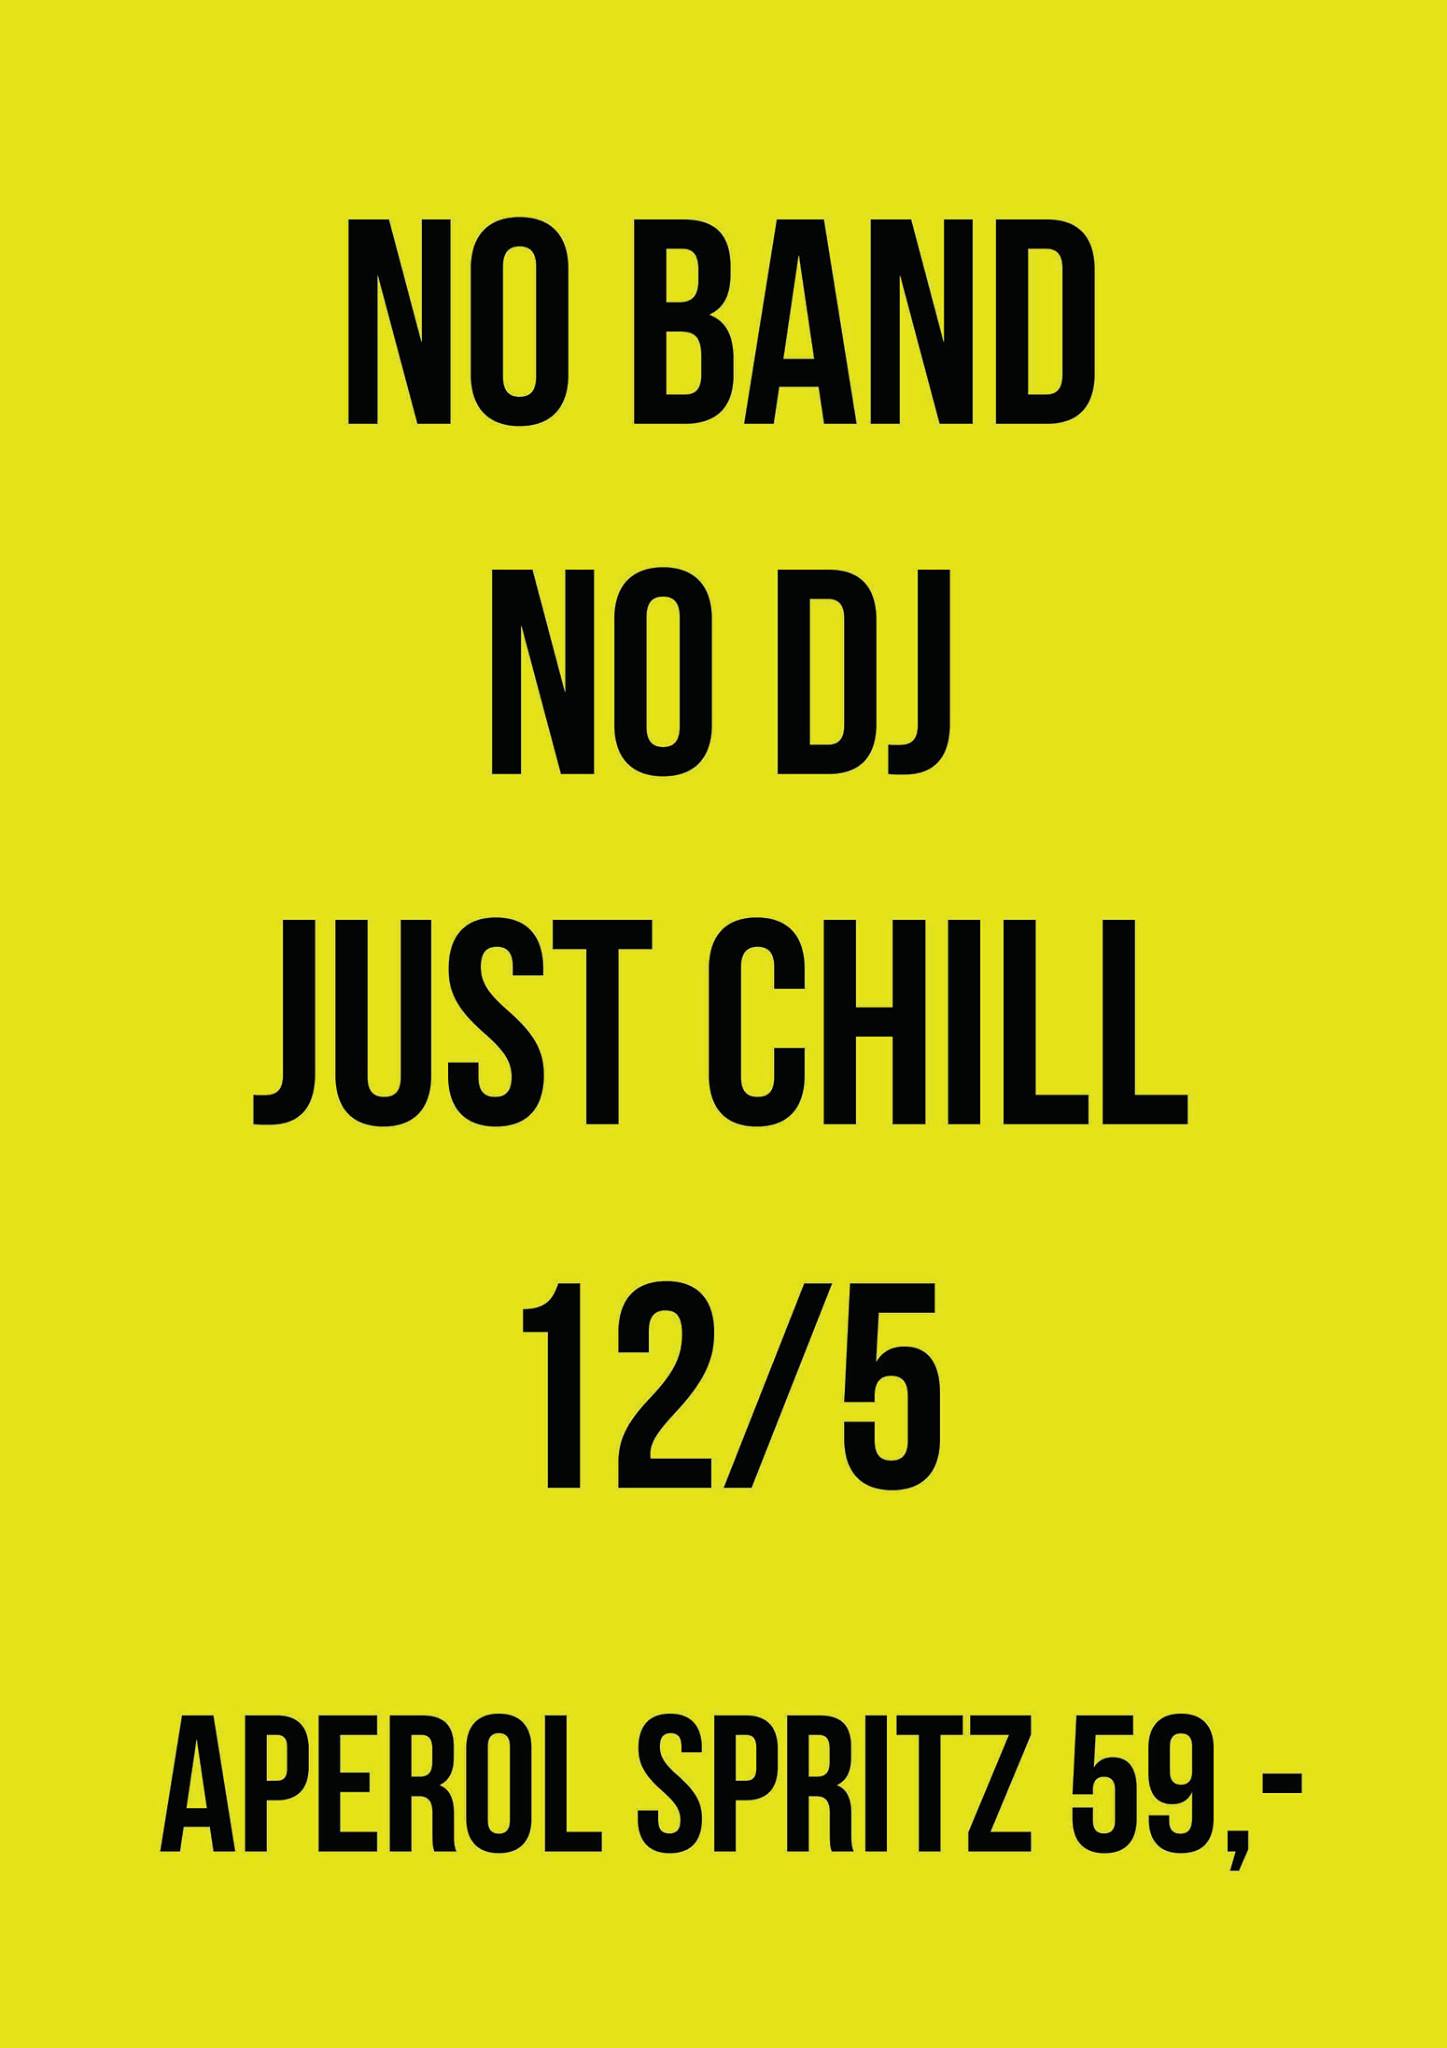 No band, no dj, just chill